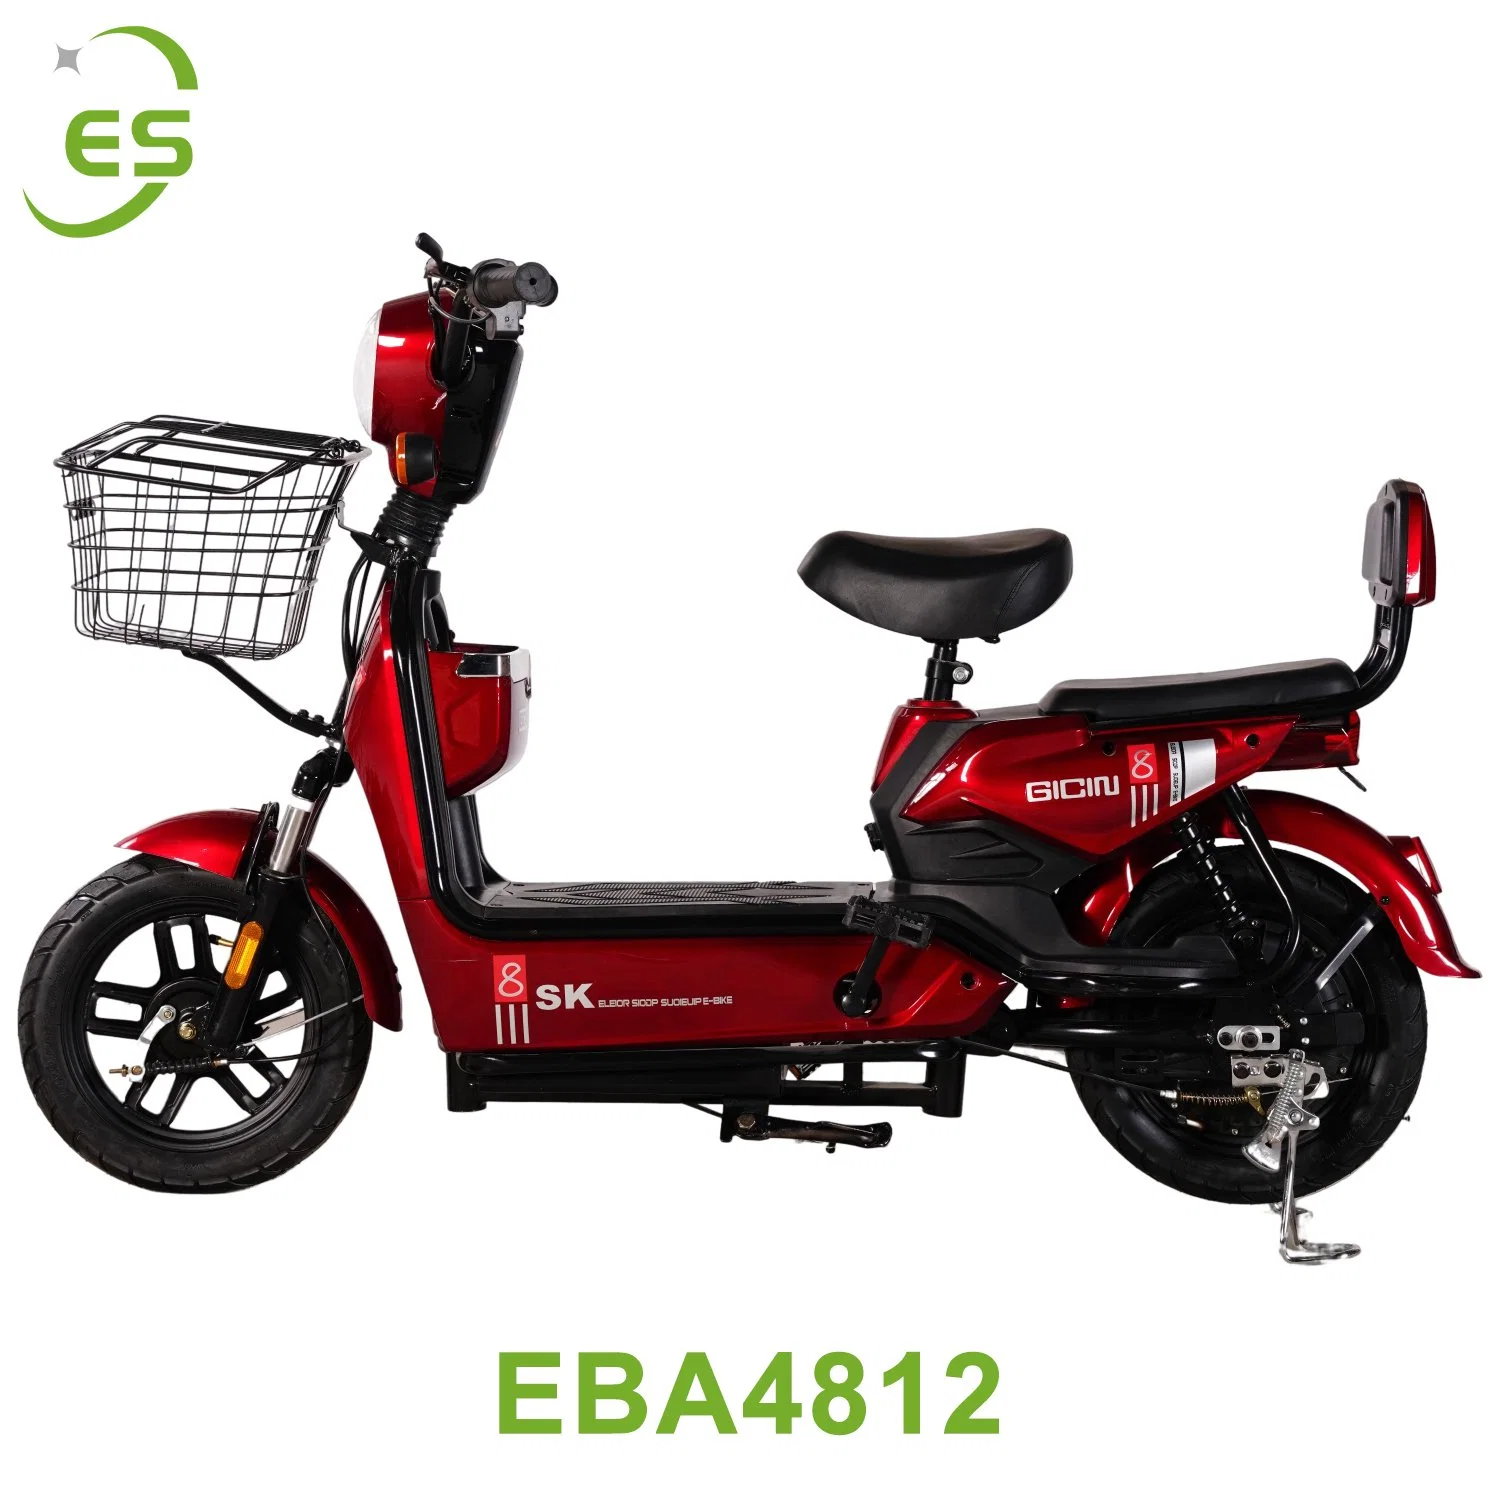 Fabricado en China Nuevo estándar nacional eléctrico de pequeñas bicicletas de batería Dos ruedas de hombres y mujeres Bicicletas eléctricas Hot Sell